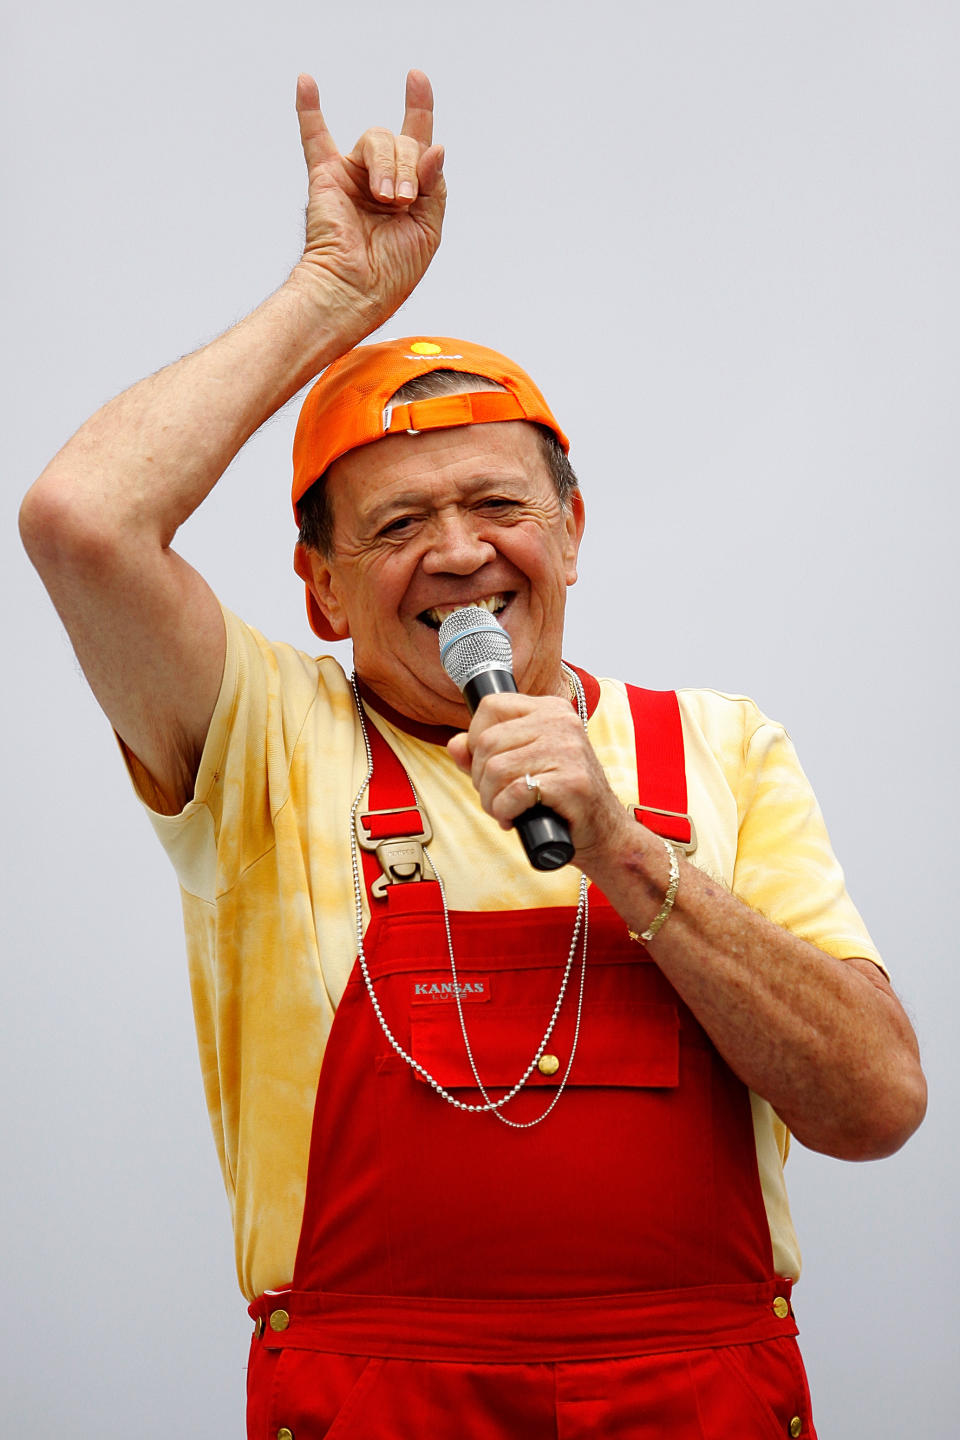 El conductor y cantante Xavier López, Chabelo, durante una presentación por el 199 aniversario de la Independencia de México en el zócalo en Ciudad de México (Foto: Héctor Vivas/Jam Media/LatinContent vía Getty Images).